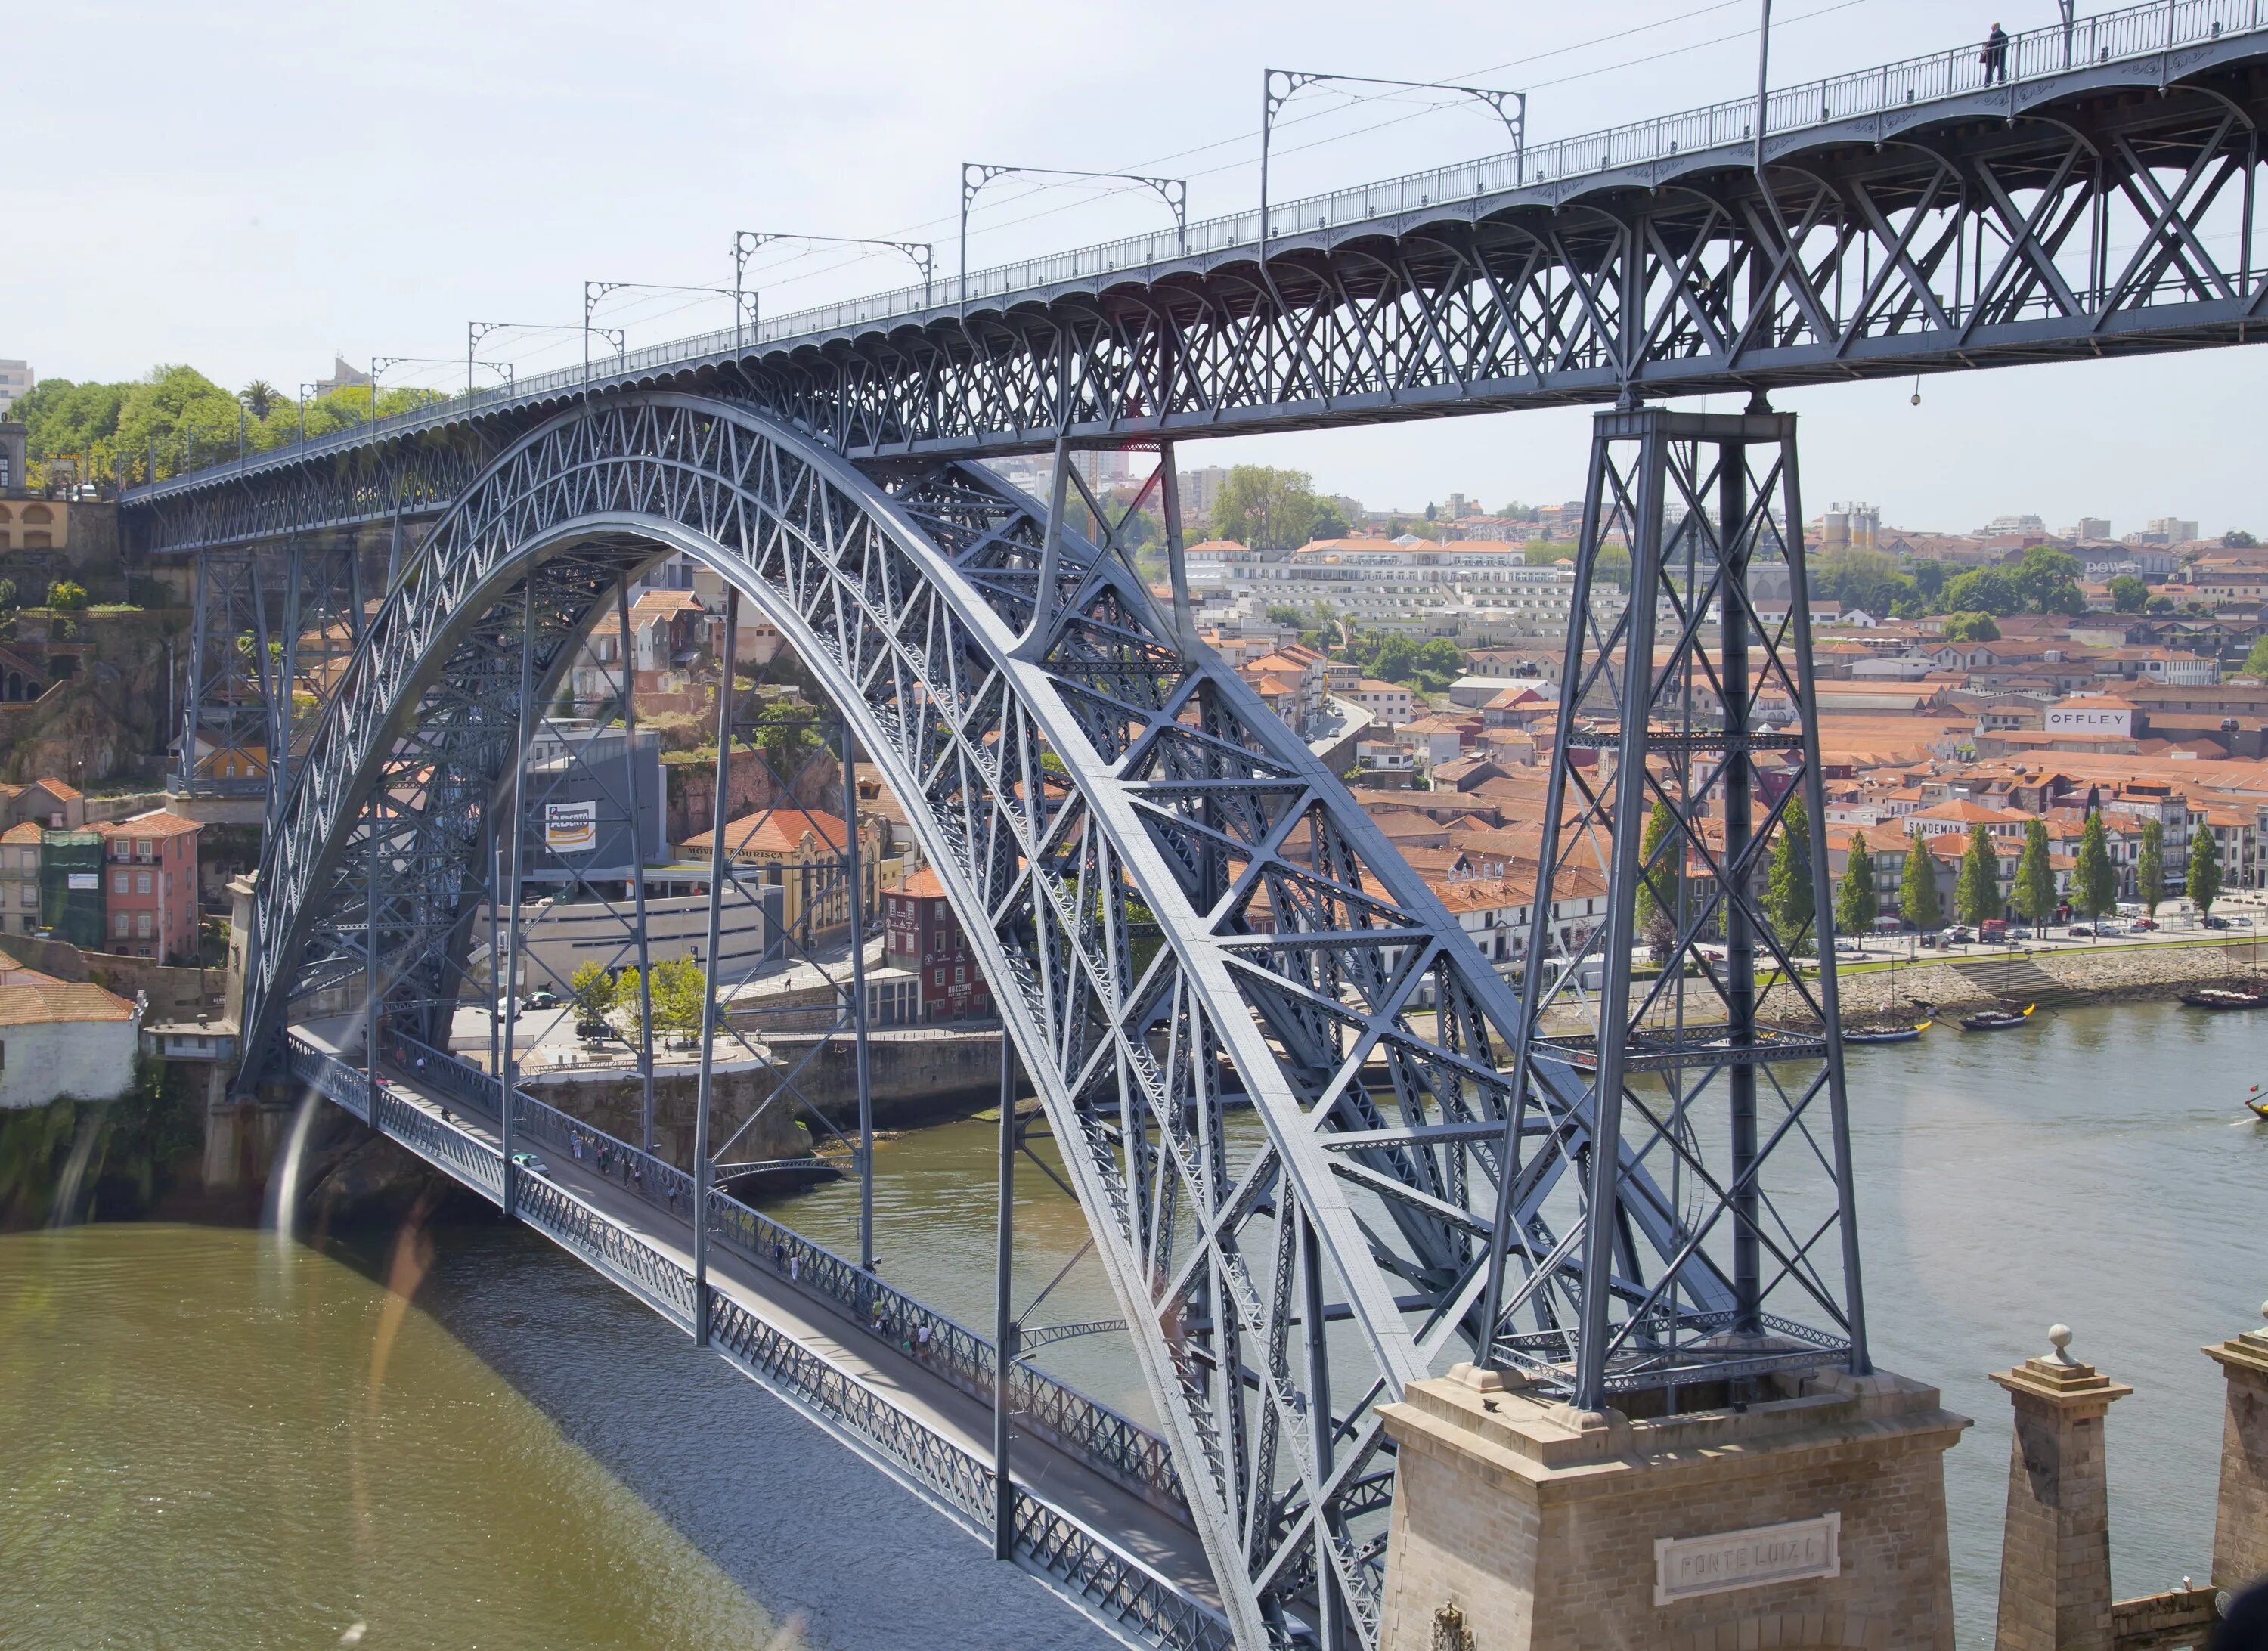 Г дд. Мост Понти-ди-Дон-Луиш i. Мост Дона Луиша Португалия. Dom Luis i Bridge. Мост Понти-ди-Дон-Луиш i с трамваем.